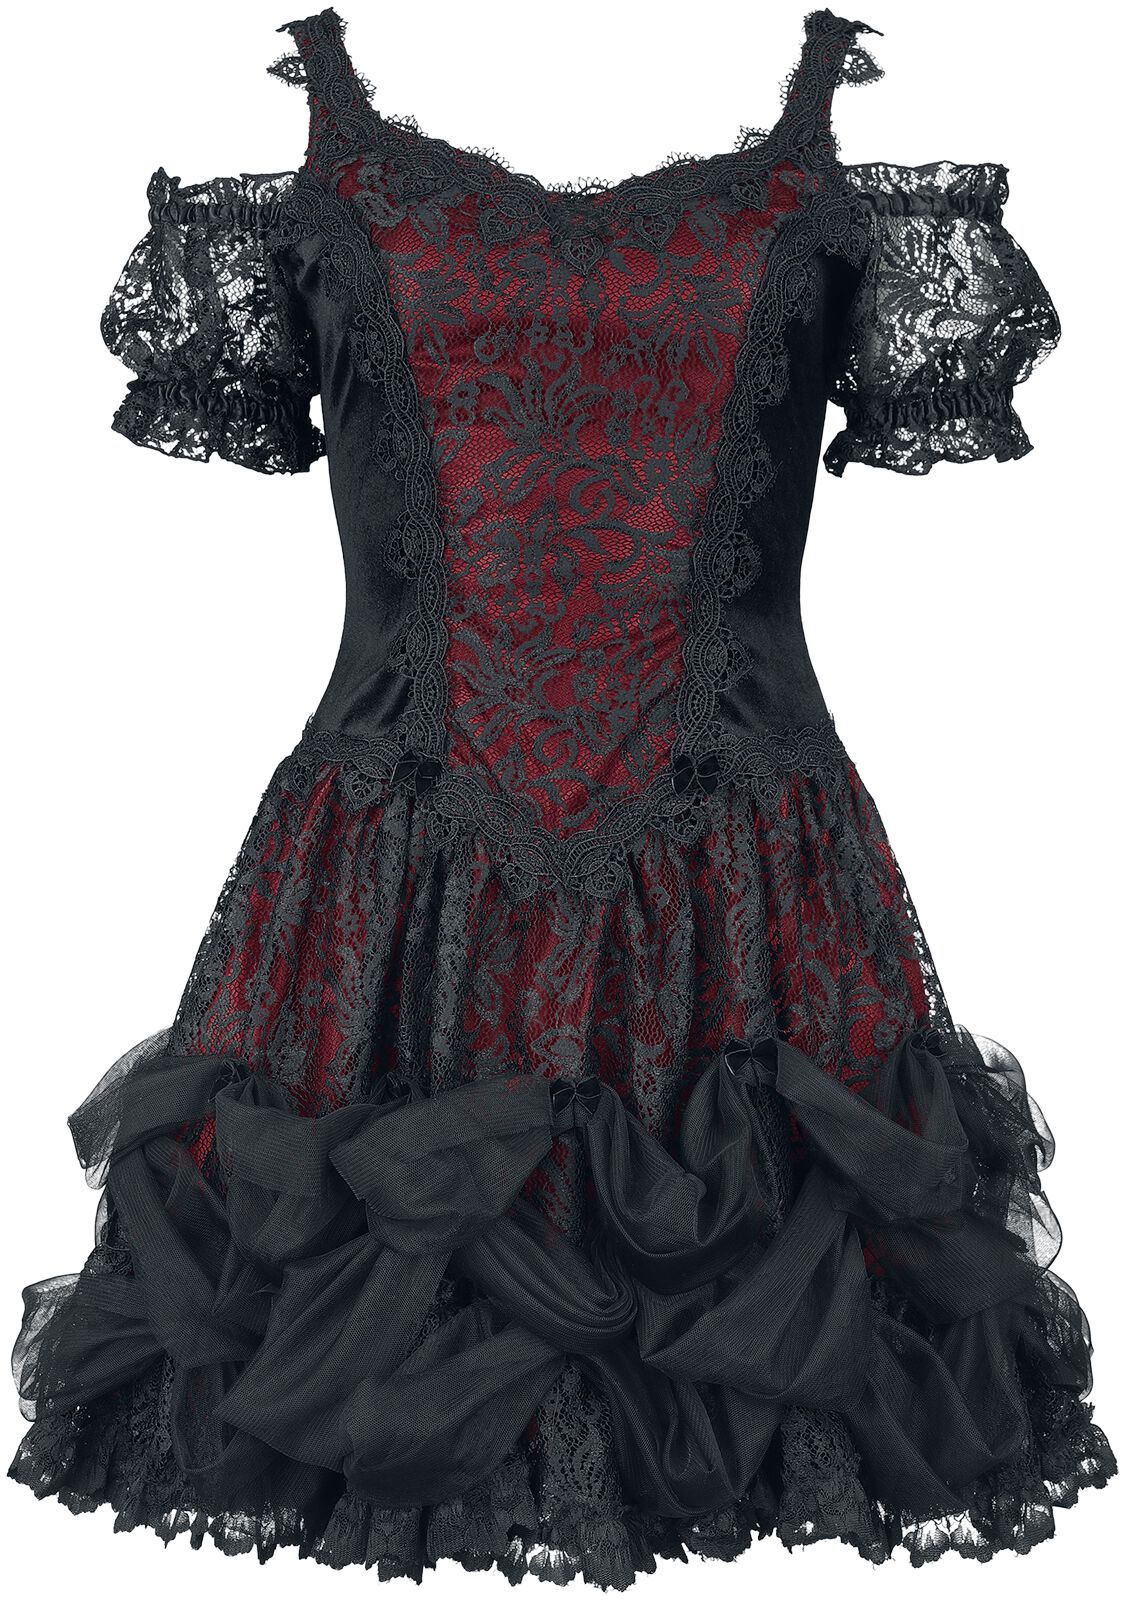 Sinister Gothic - Mittelalter Kurzes Kleid - Gothic Dress - XS bis XXL - für Damen - Größe XXL - schwarz/rot